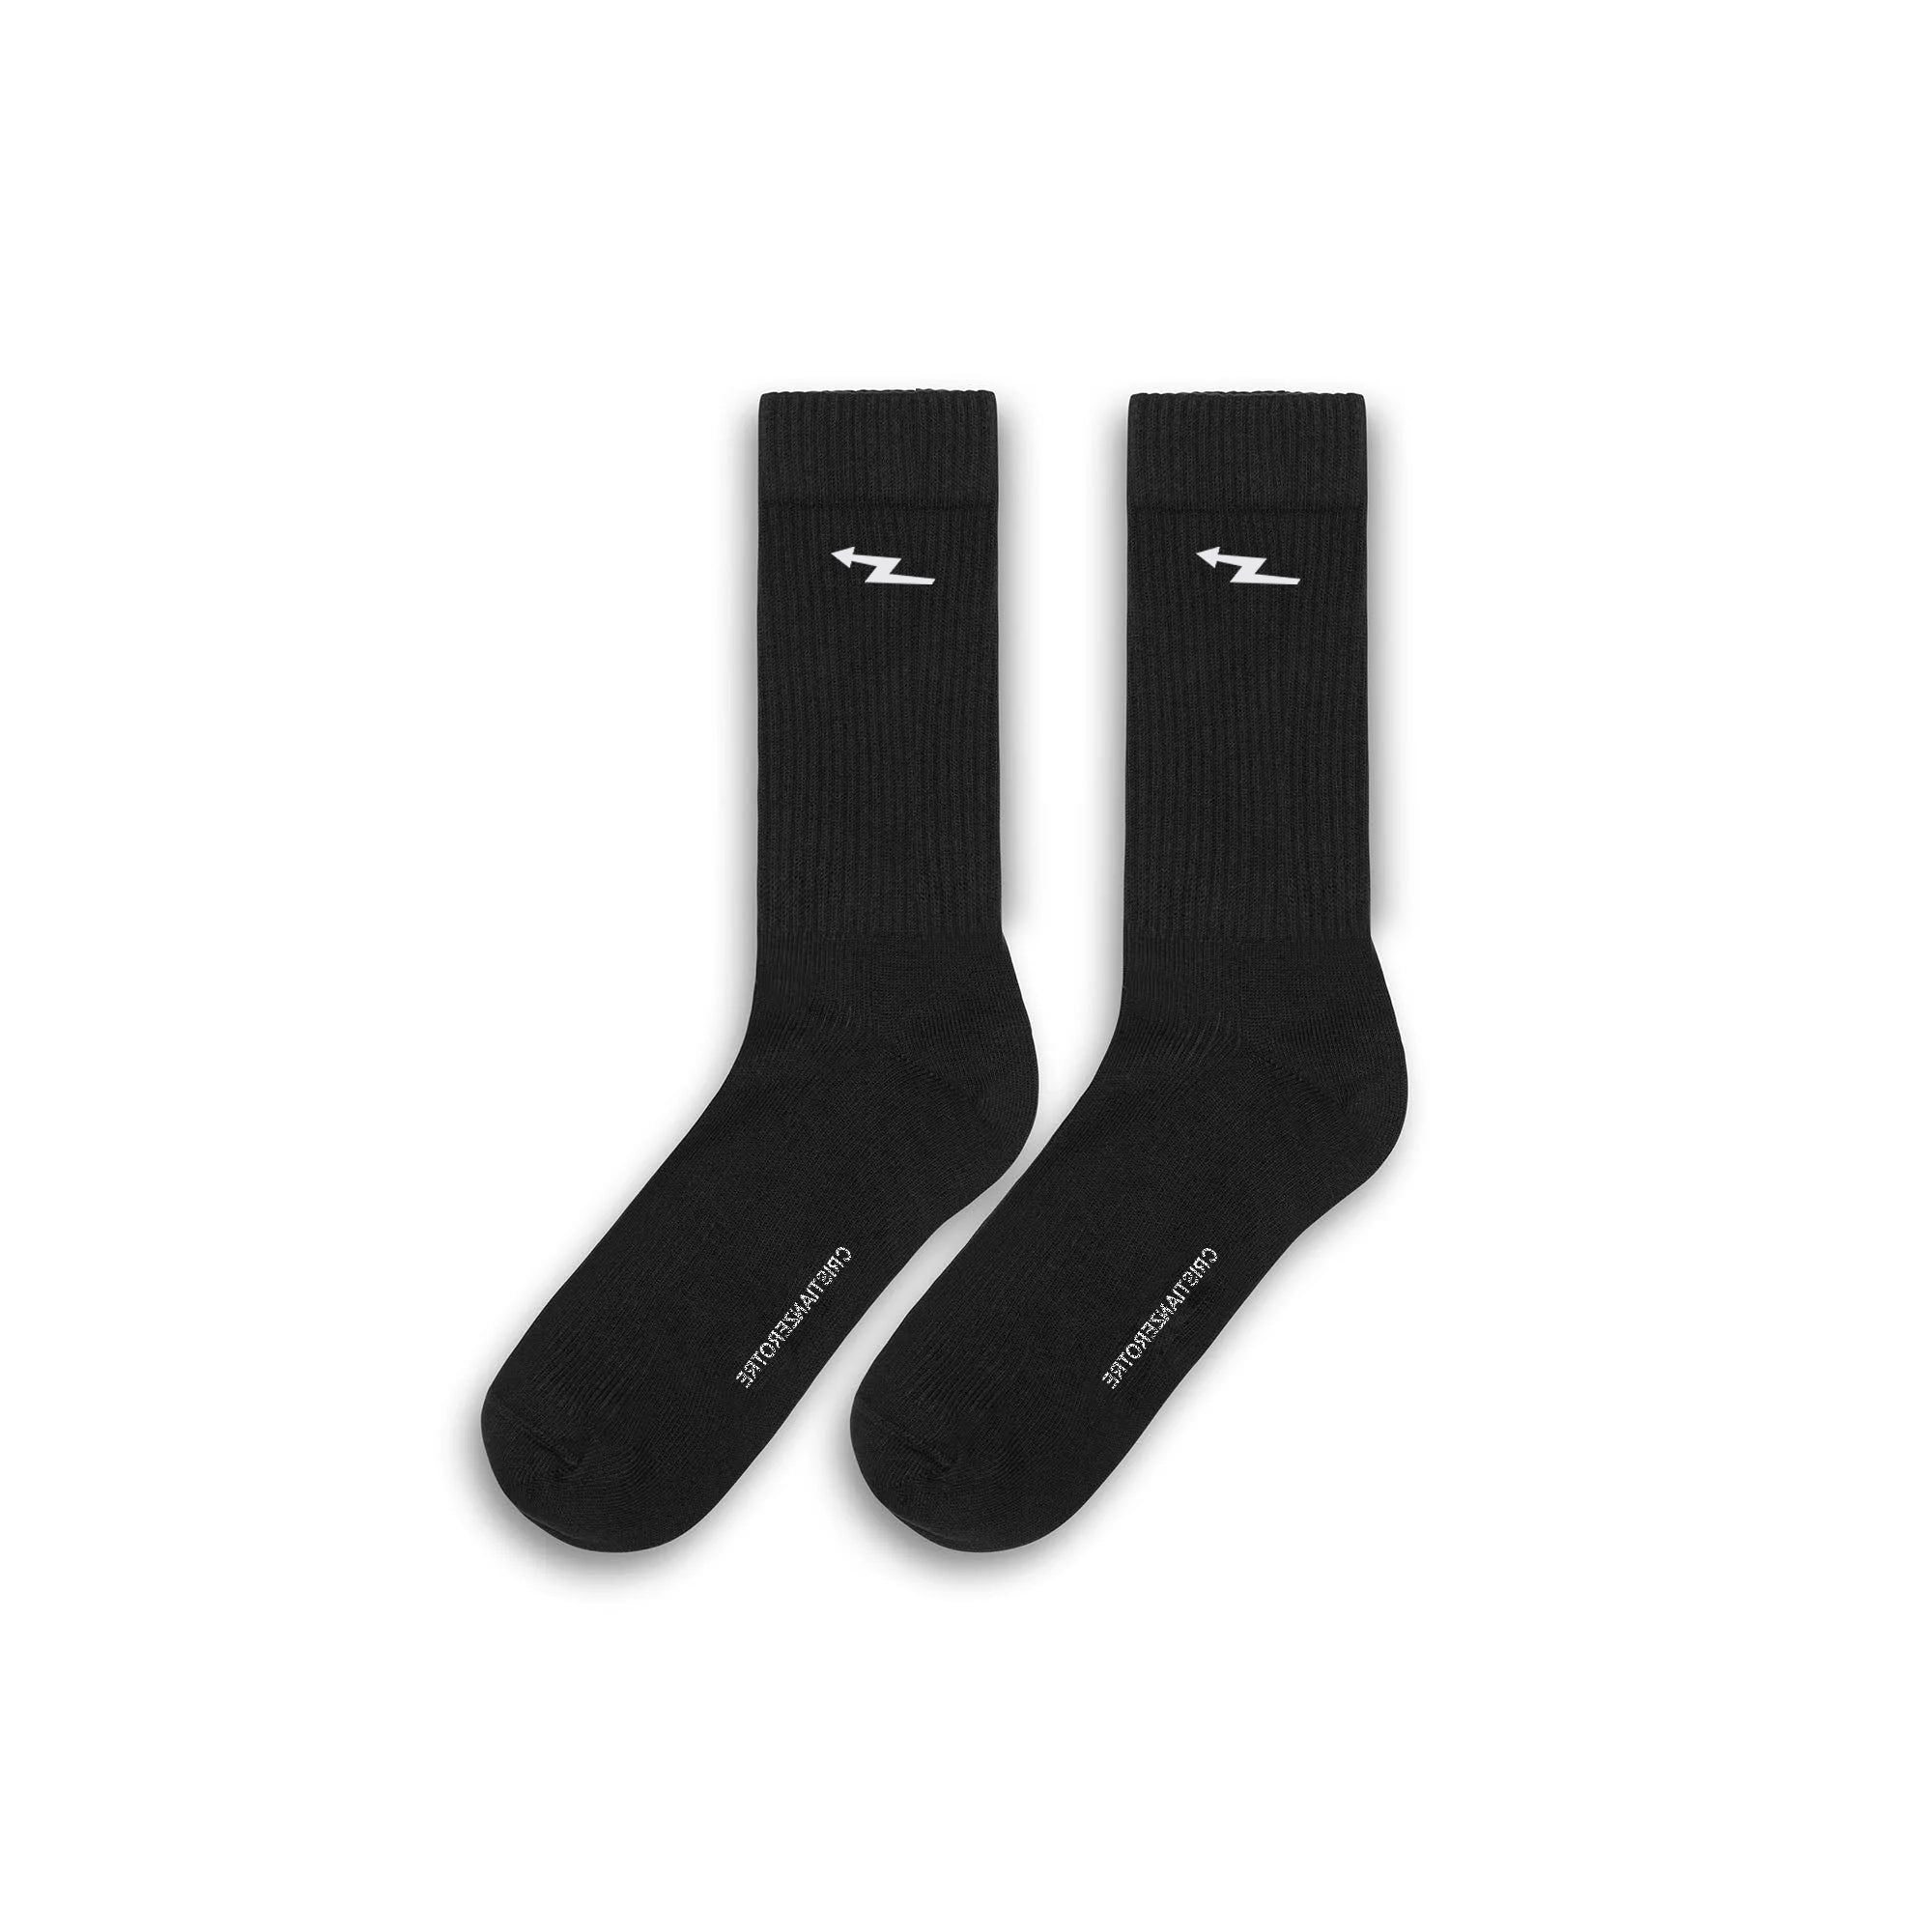 Schwarze Socken mit Blitzlogo